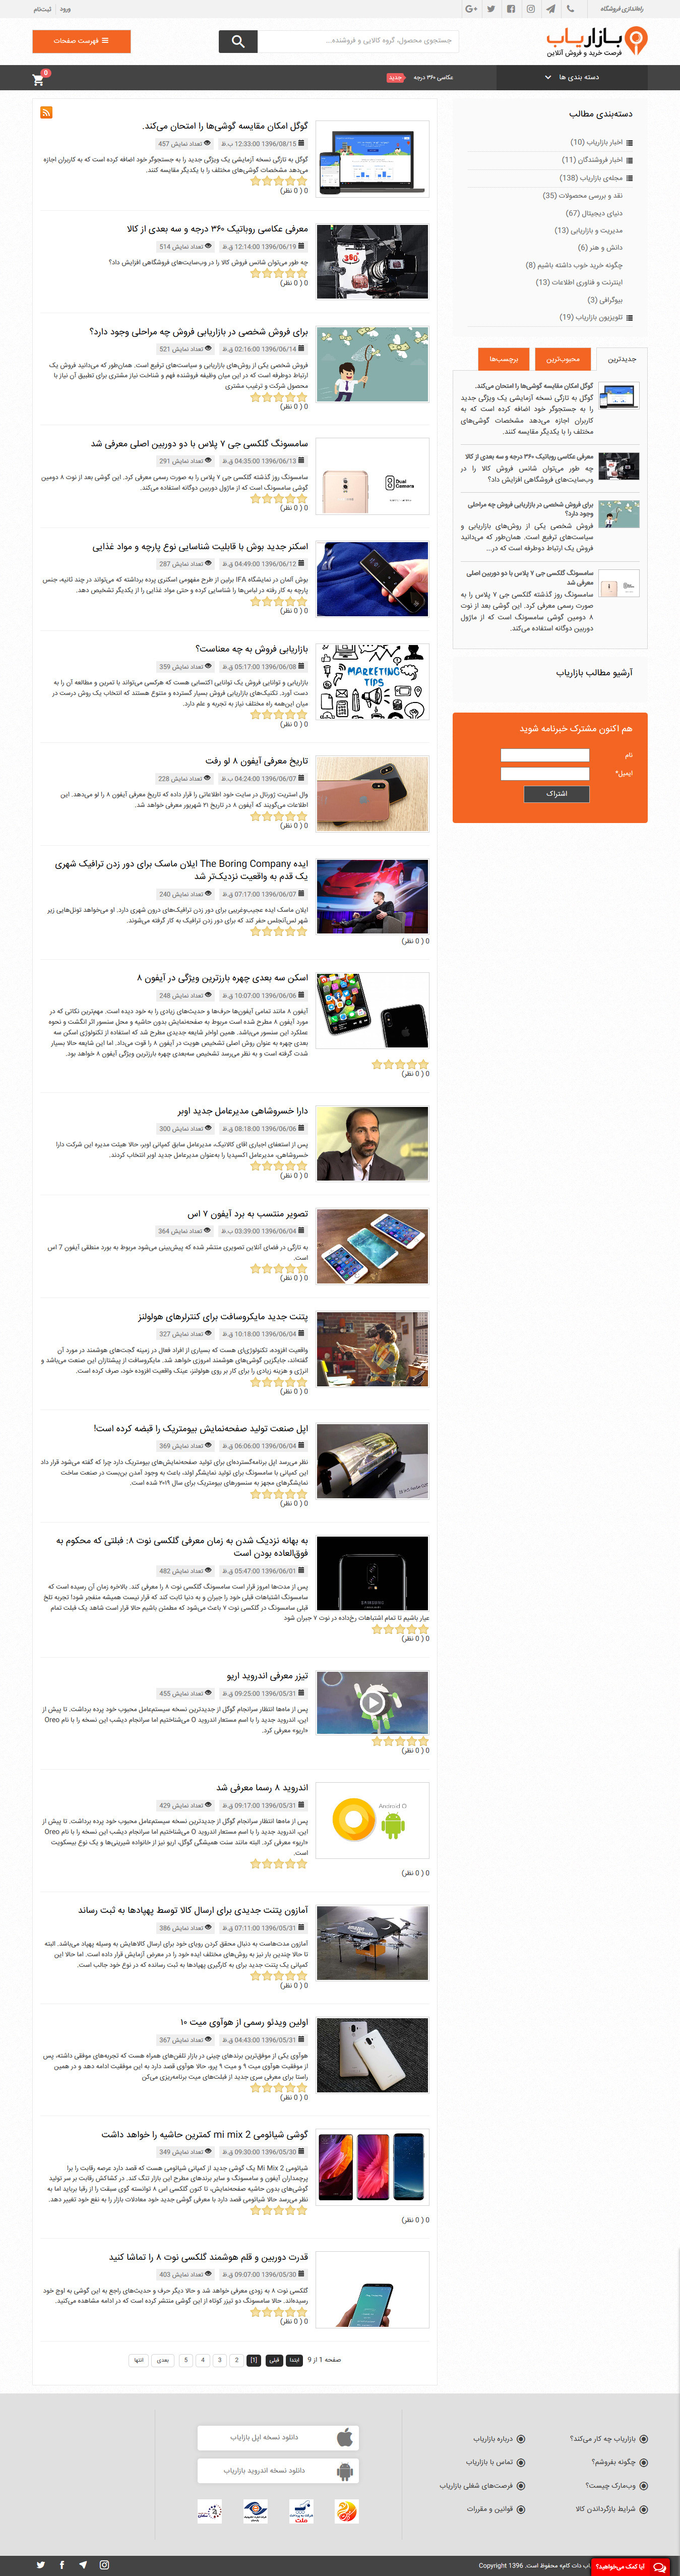 تصویری از صفحه مجله آنلاین و بلاگ فروشگاه بازاریاب دات کام